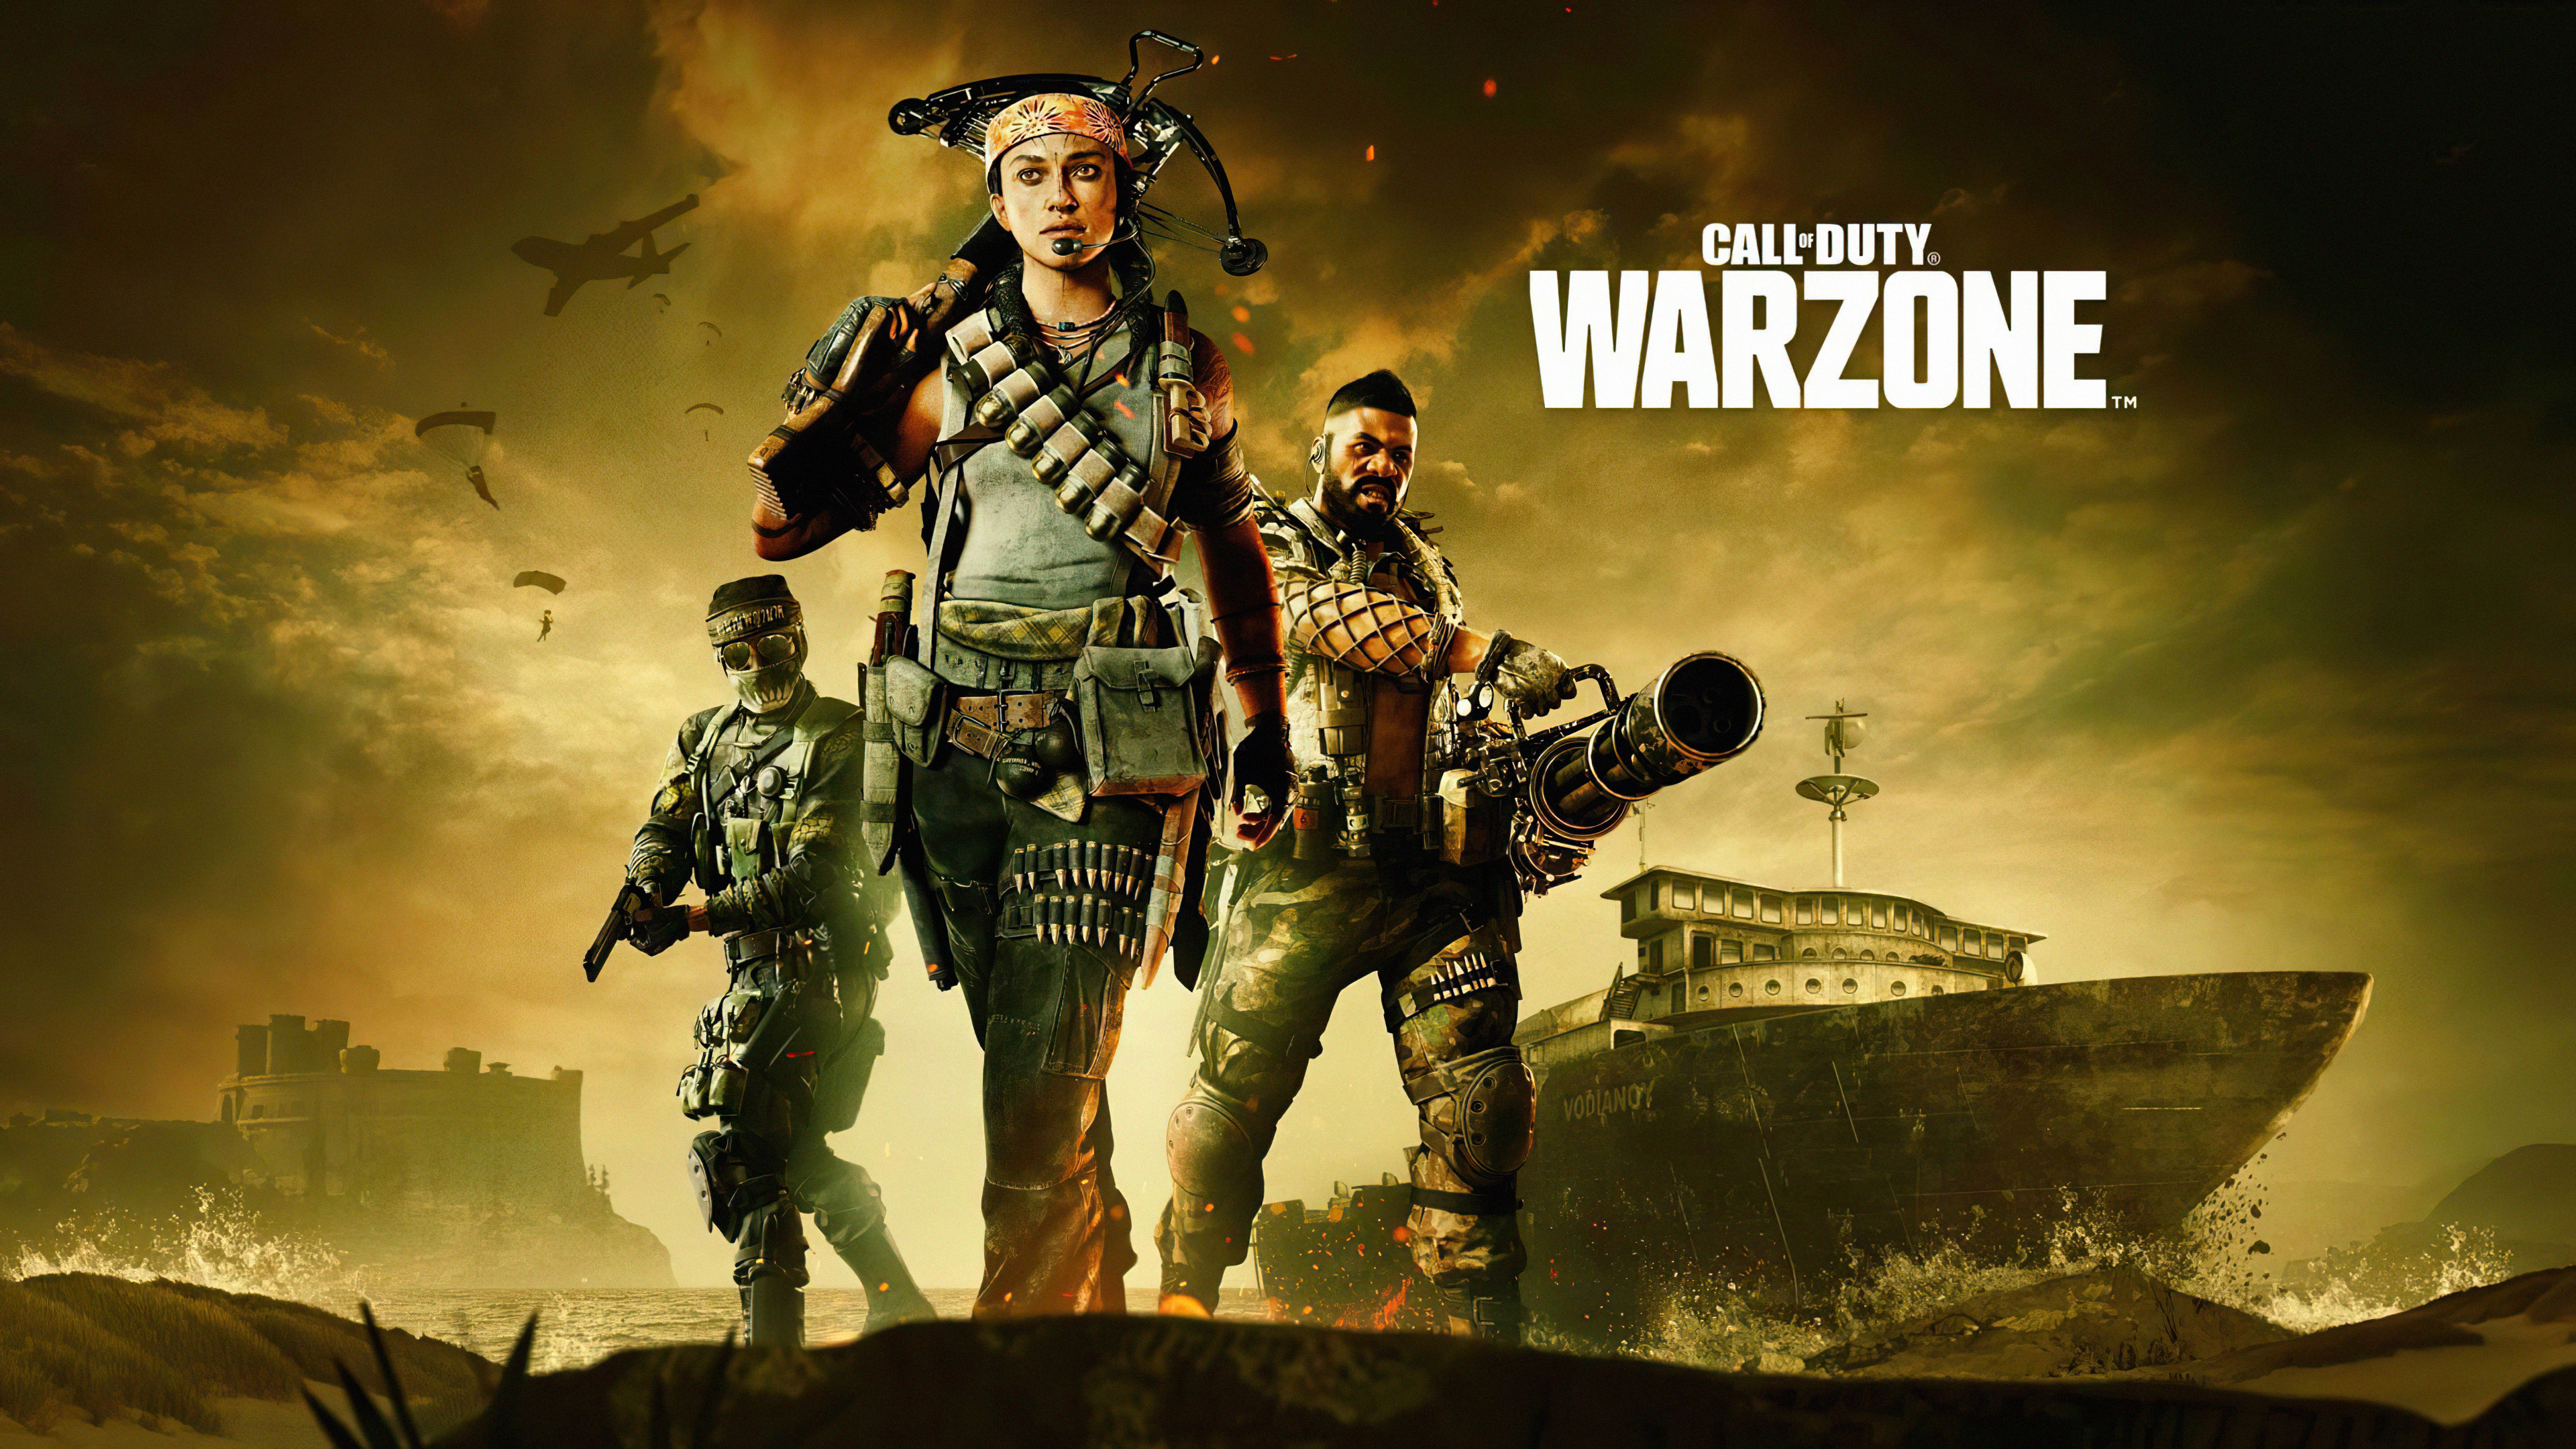 Cảm nhận sự táo bạo và liều lĩnh với Call of Duty Warzone Outbreak 4k Wallpaper! Hình ảnh sống động và đầy kịch tính sẽ khiến bạn cảm thấy như mình đang ở trong trò chơi. Bấm play ngay để khám phá cảnh giới game vô tận và những trải nghiệm đỉnh cao.